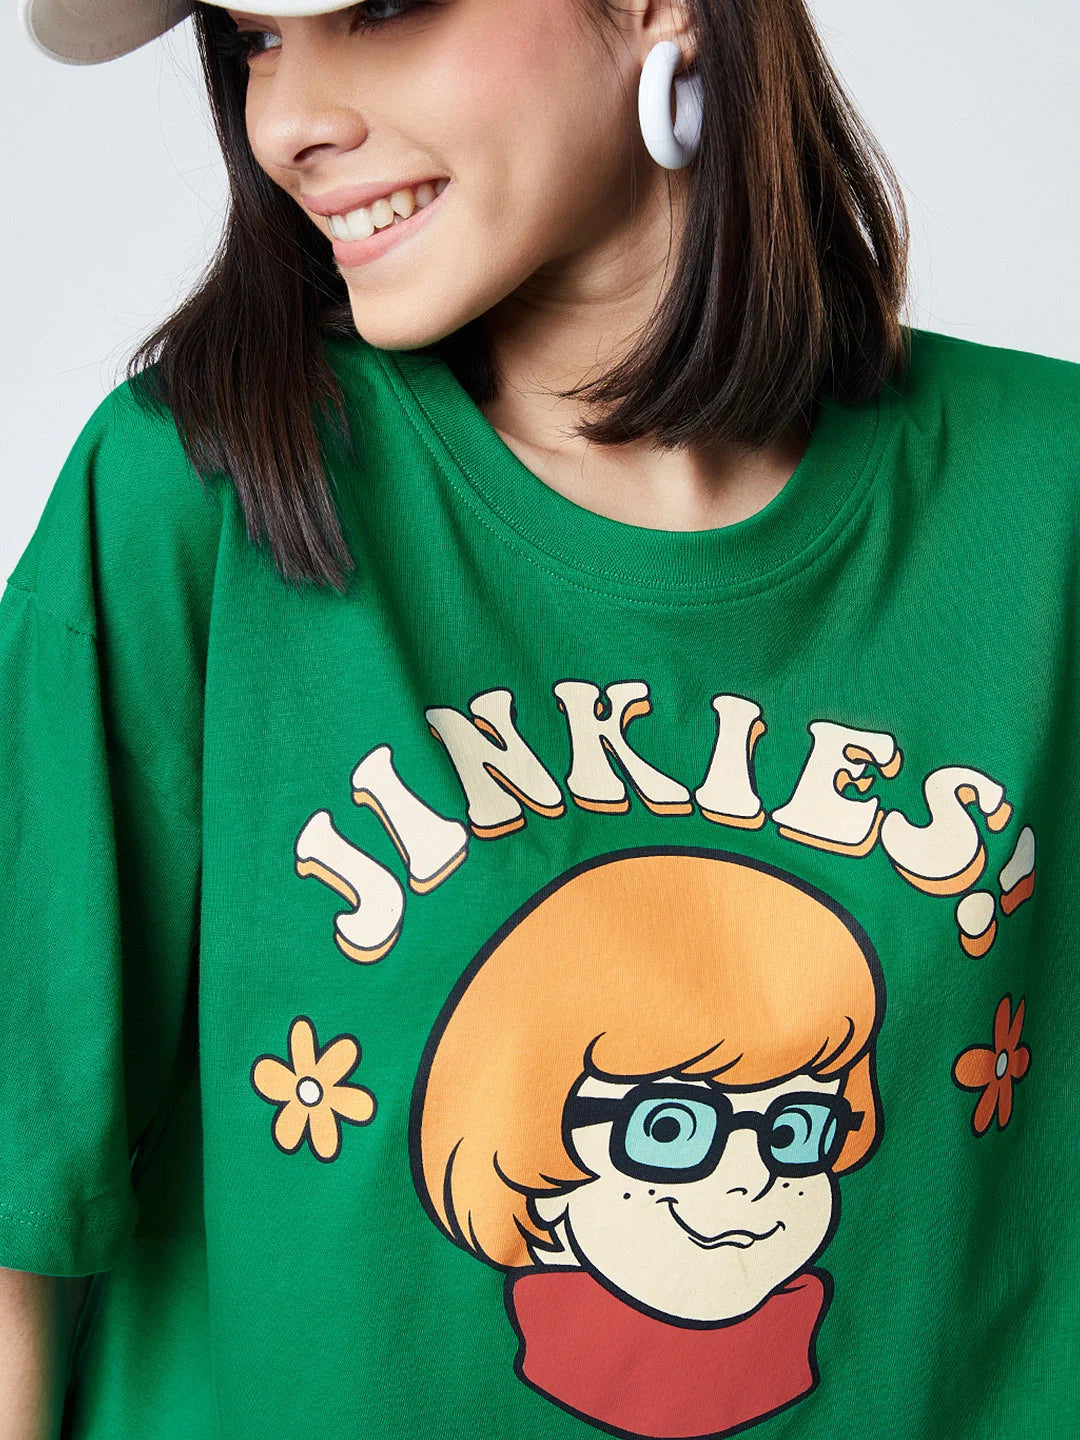 Scooby Doo Jinkies (UK version)